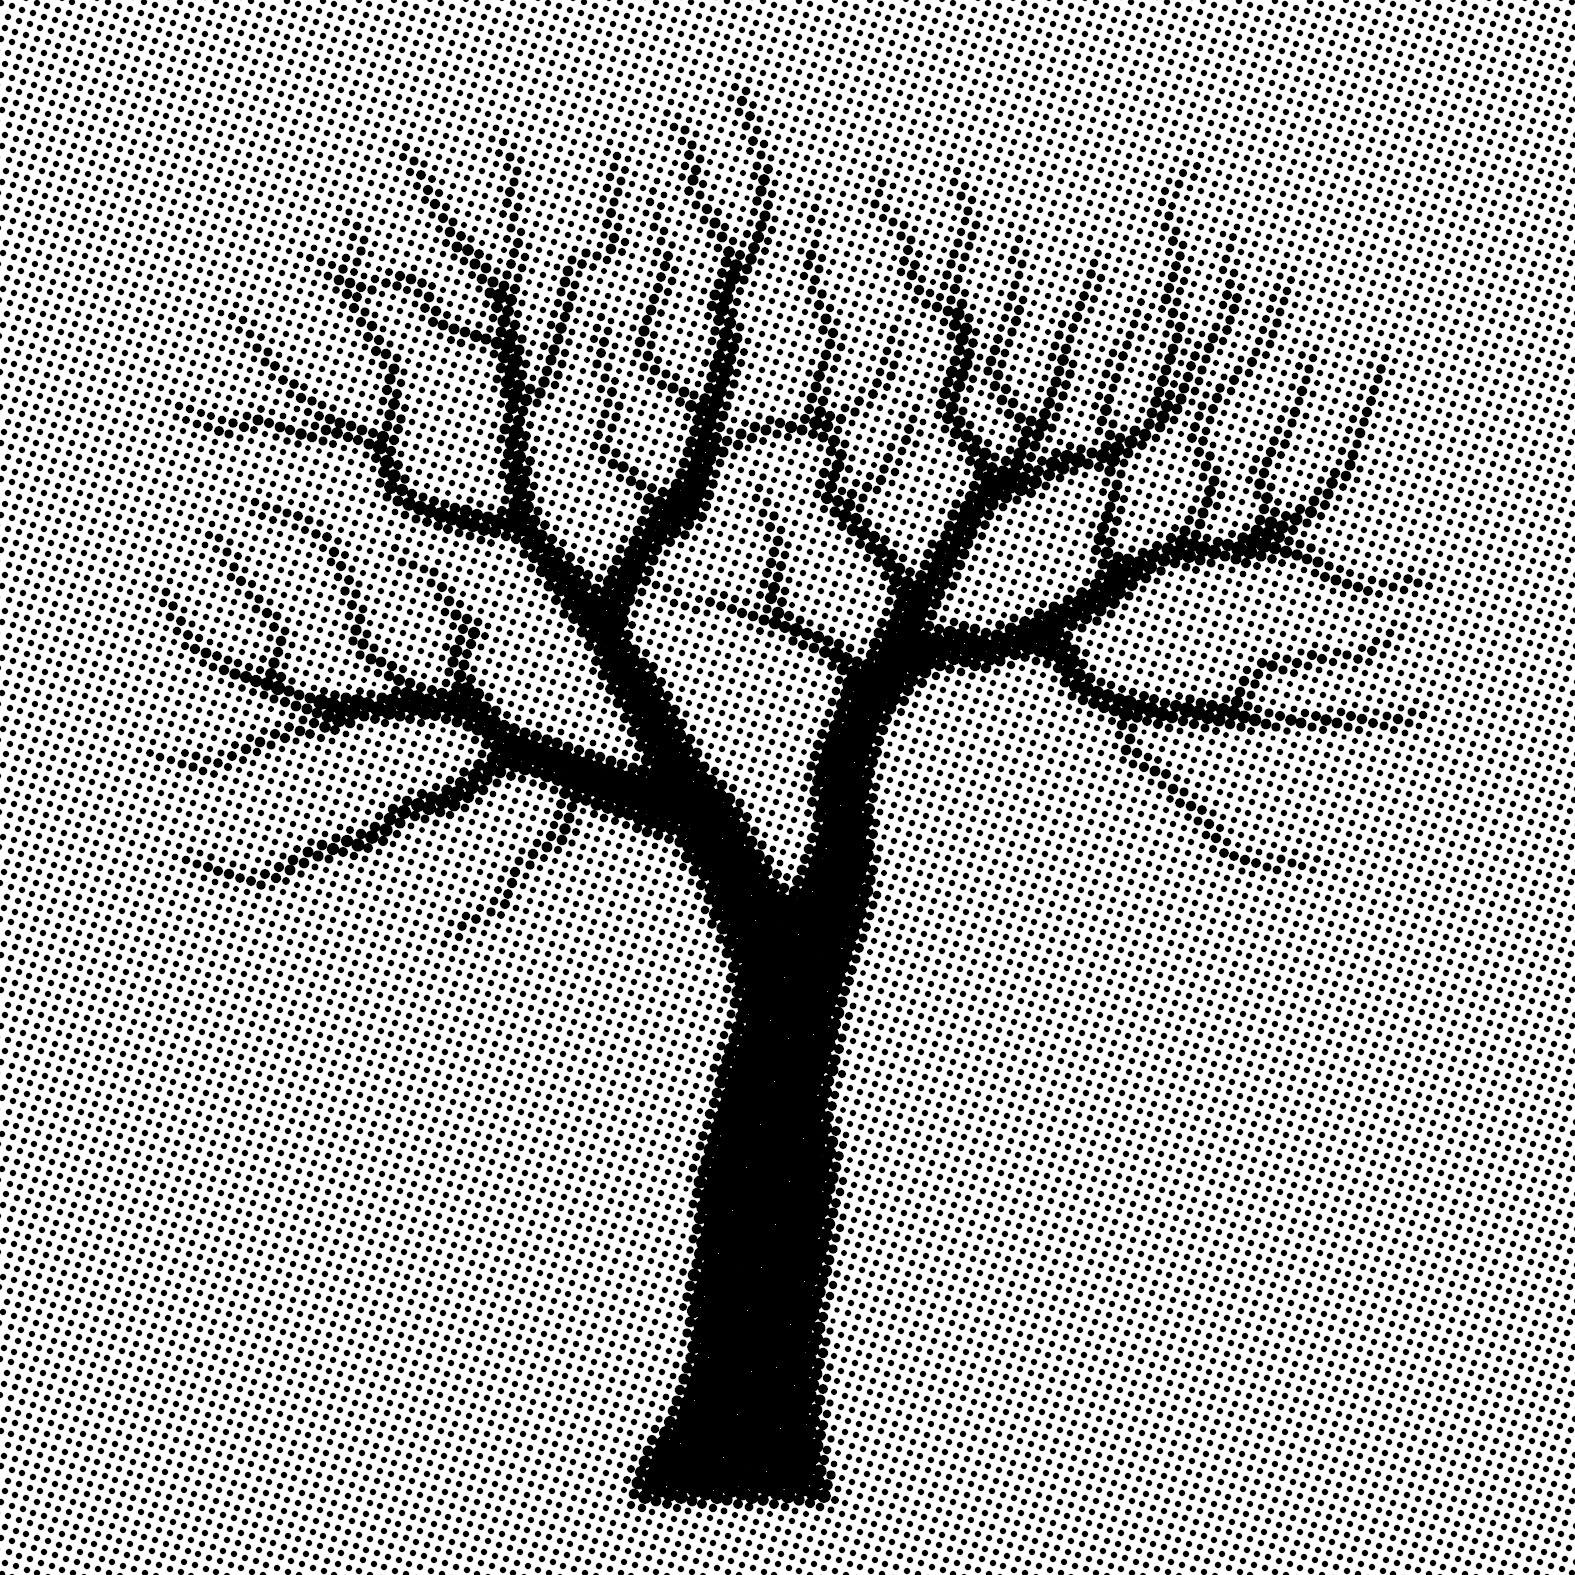 Árvore seca é símbolo da luta contra o preconceito à hanseníase